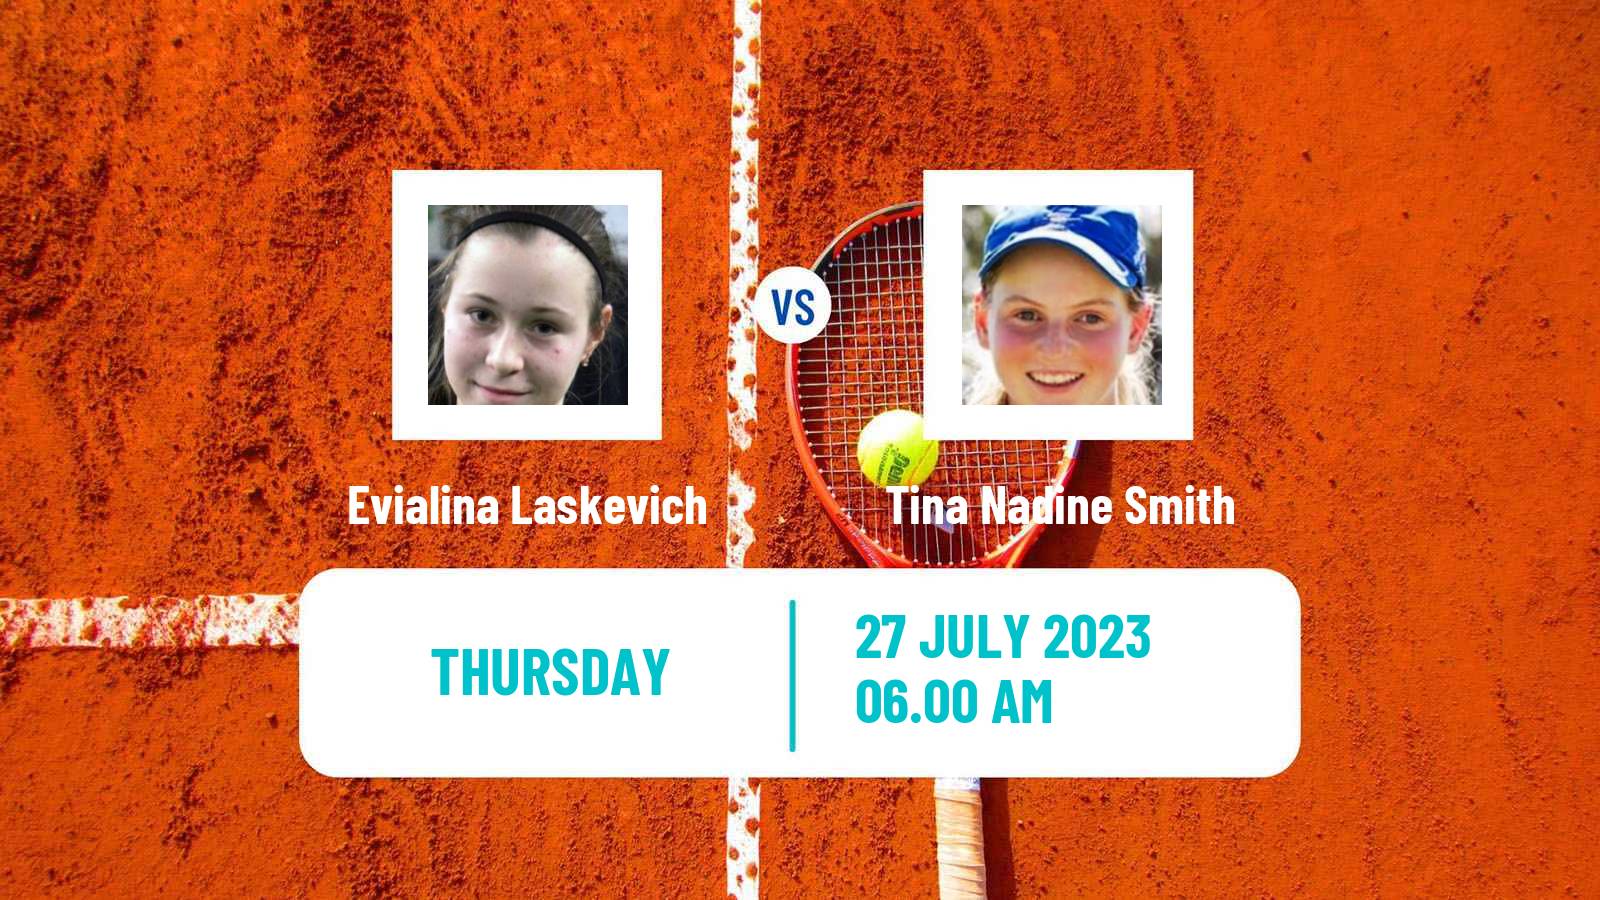 Tennis ITF W25 Horb Women Evialina Laskevich - Tina Nadine Smith